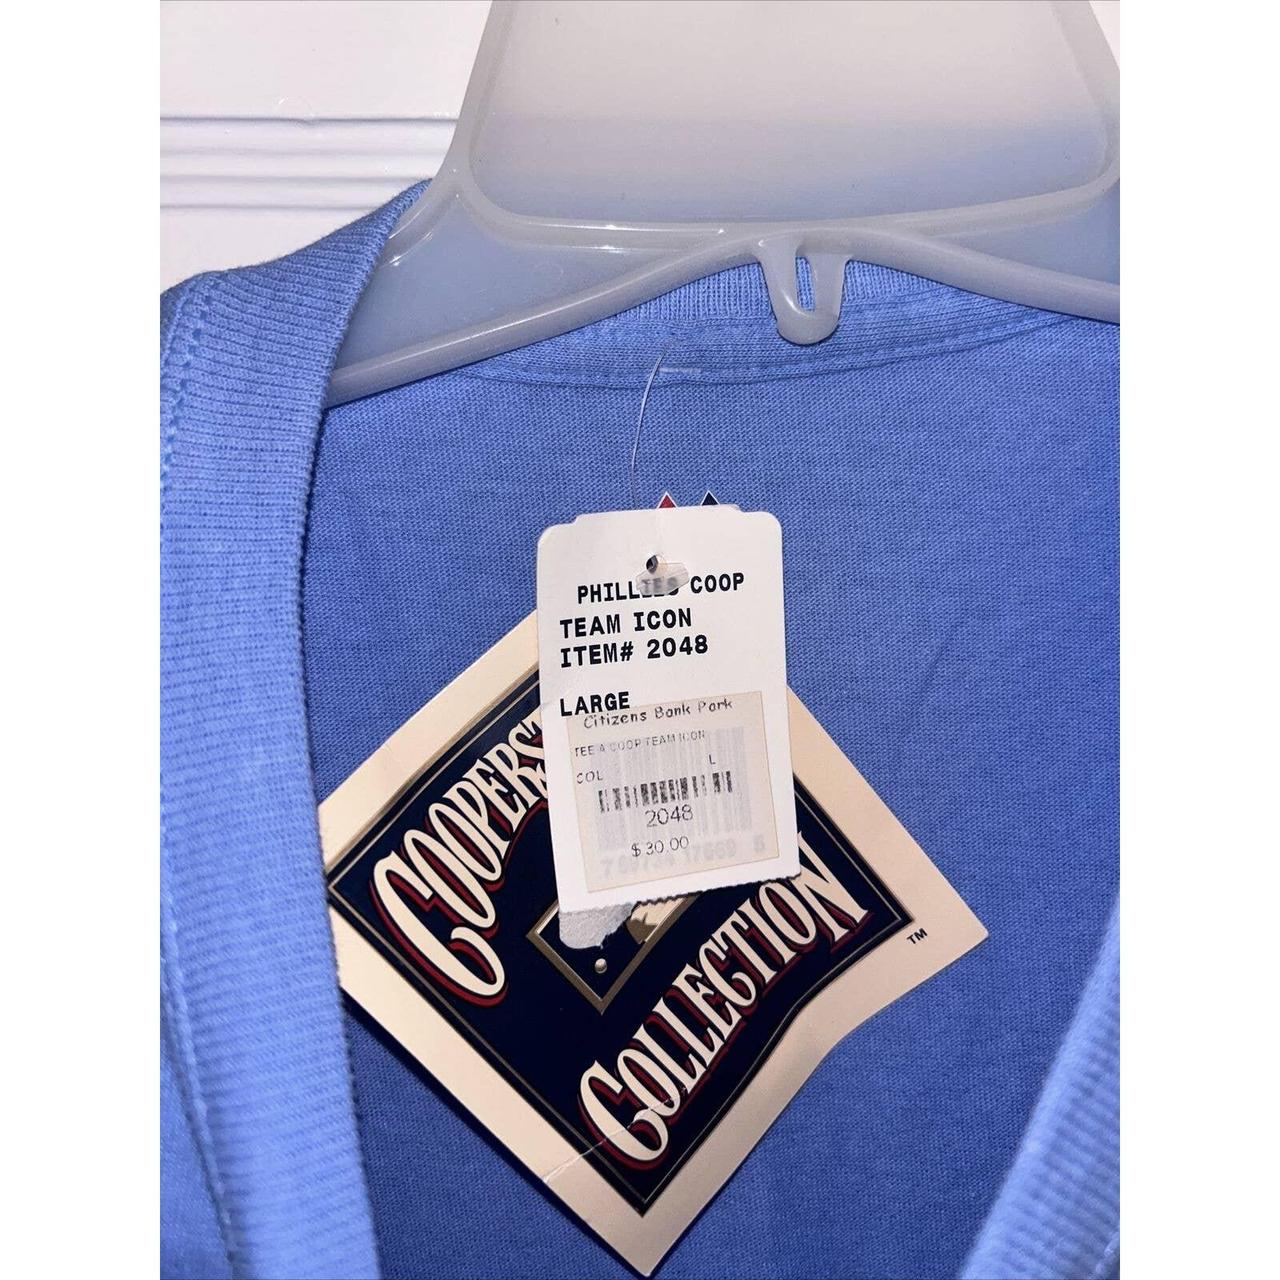 Philadelphia Phillies Cooperstown Collection jersey. - Depop